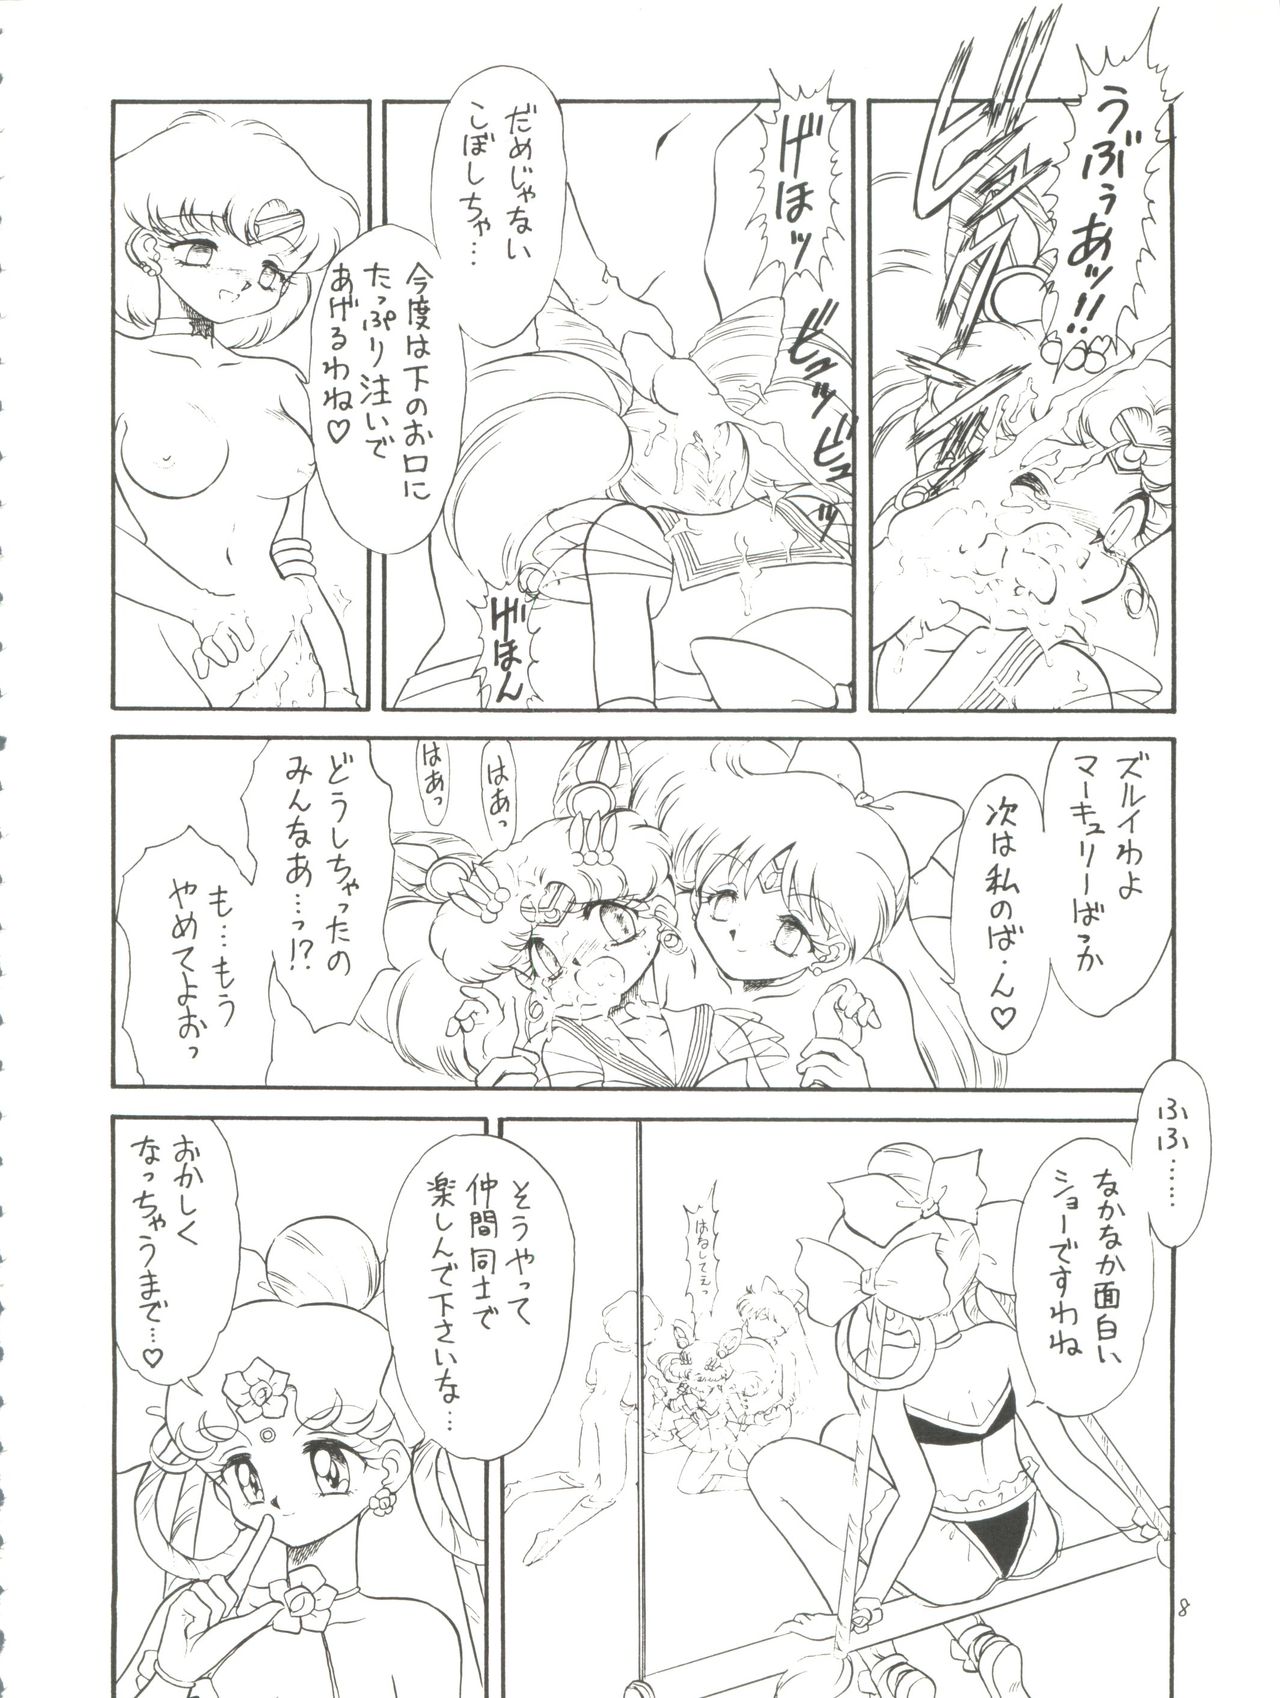 [Momo no Tsubomi (Various)] Lolikko LOVE 4 (Various) page 8 full